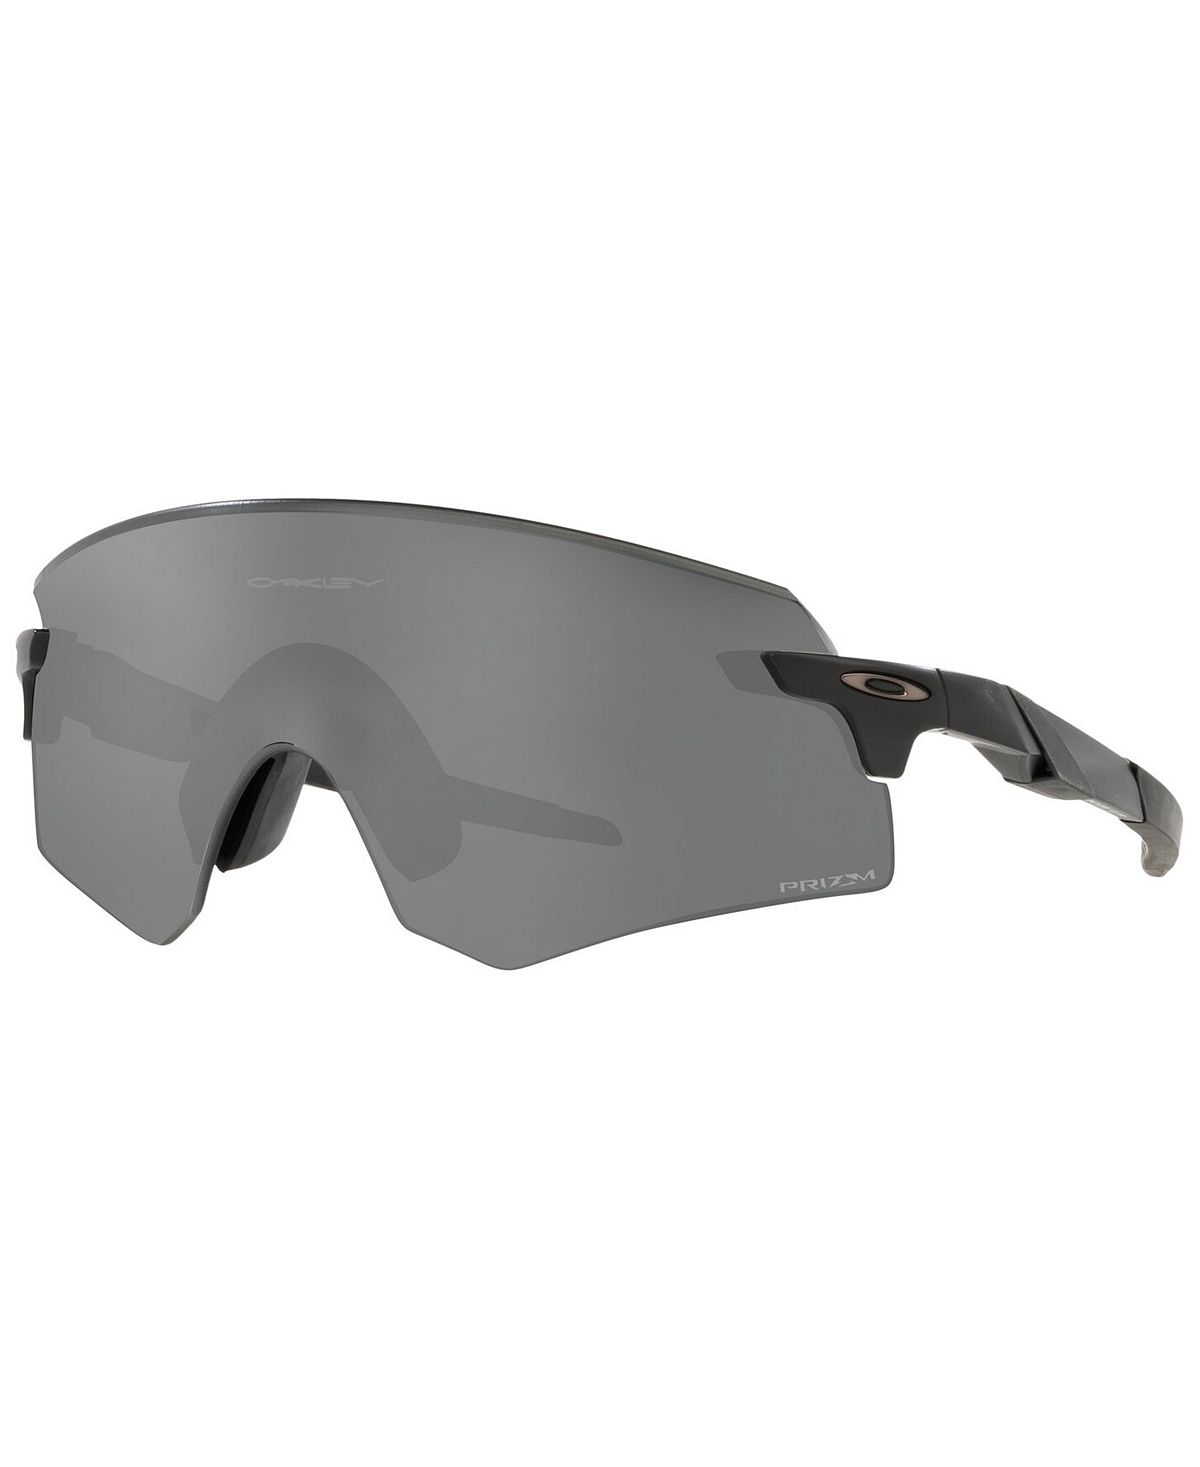 Мужские солнцезащитные очки Encoder, OO9471 36 Oakley